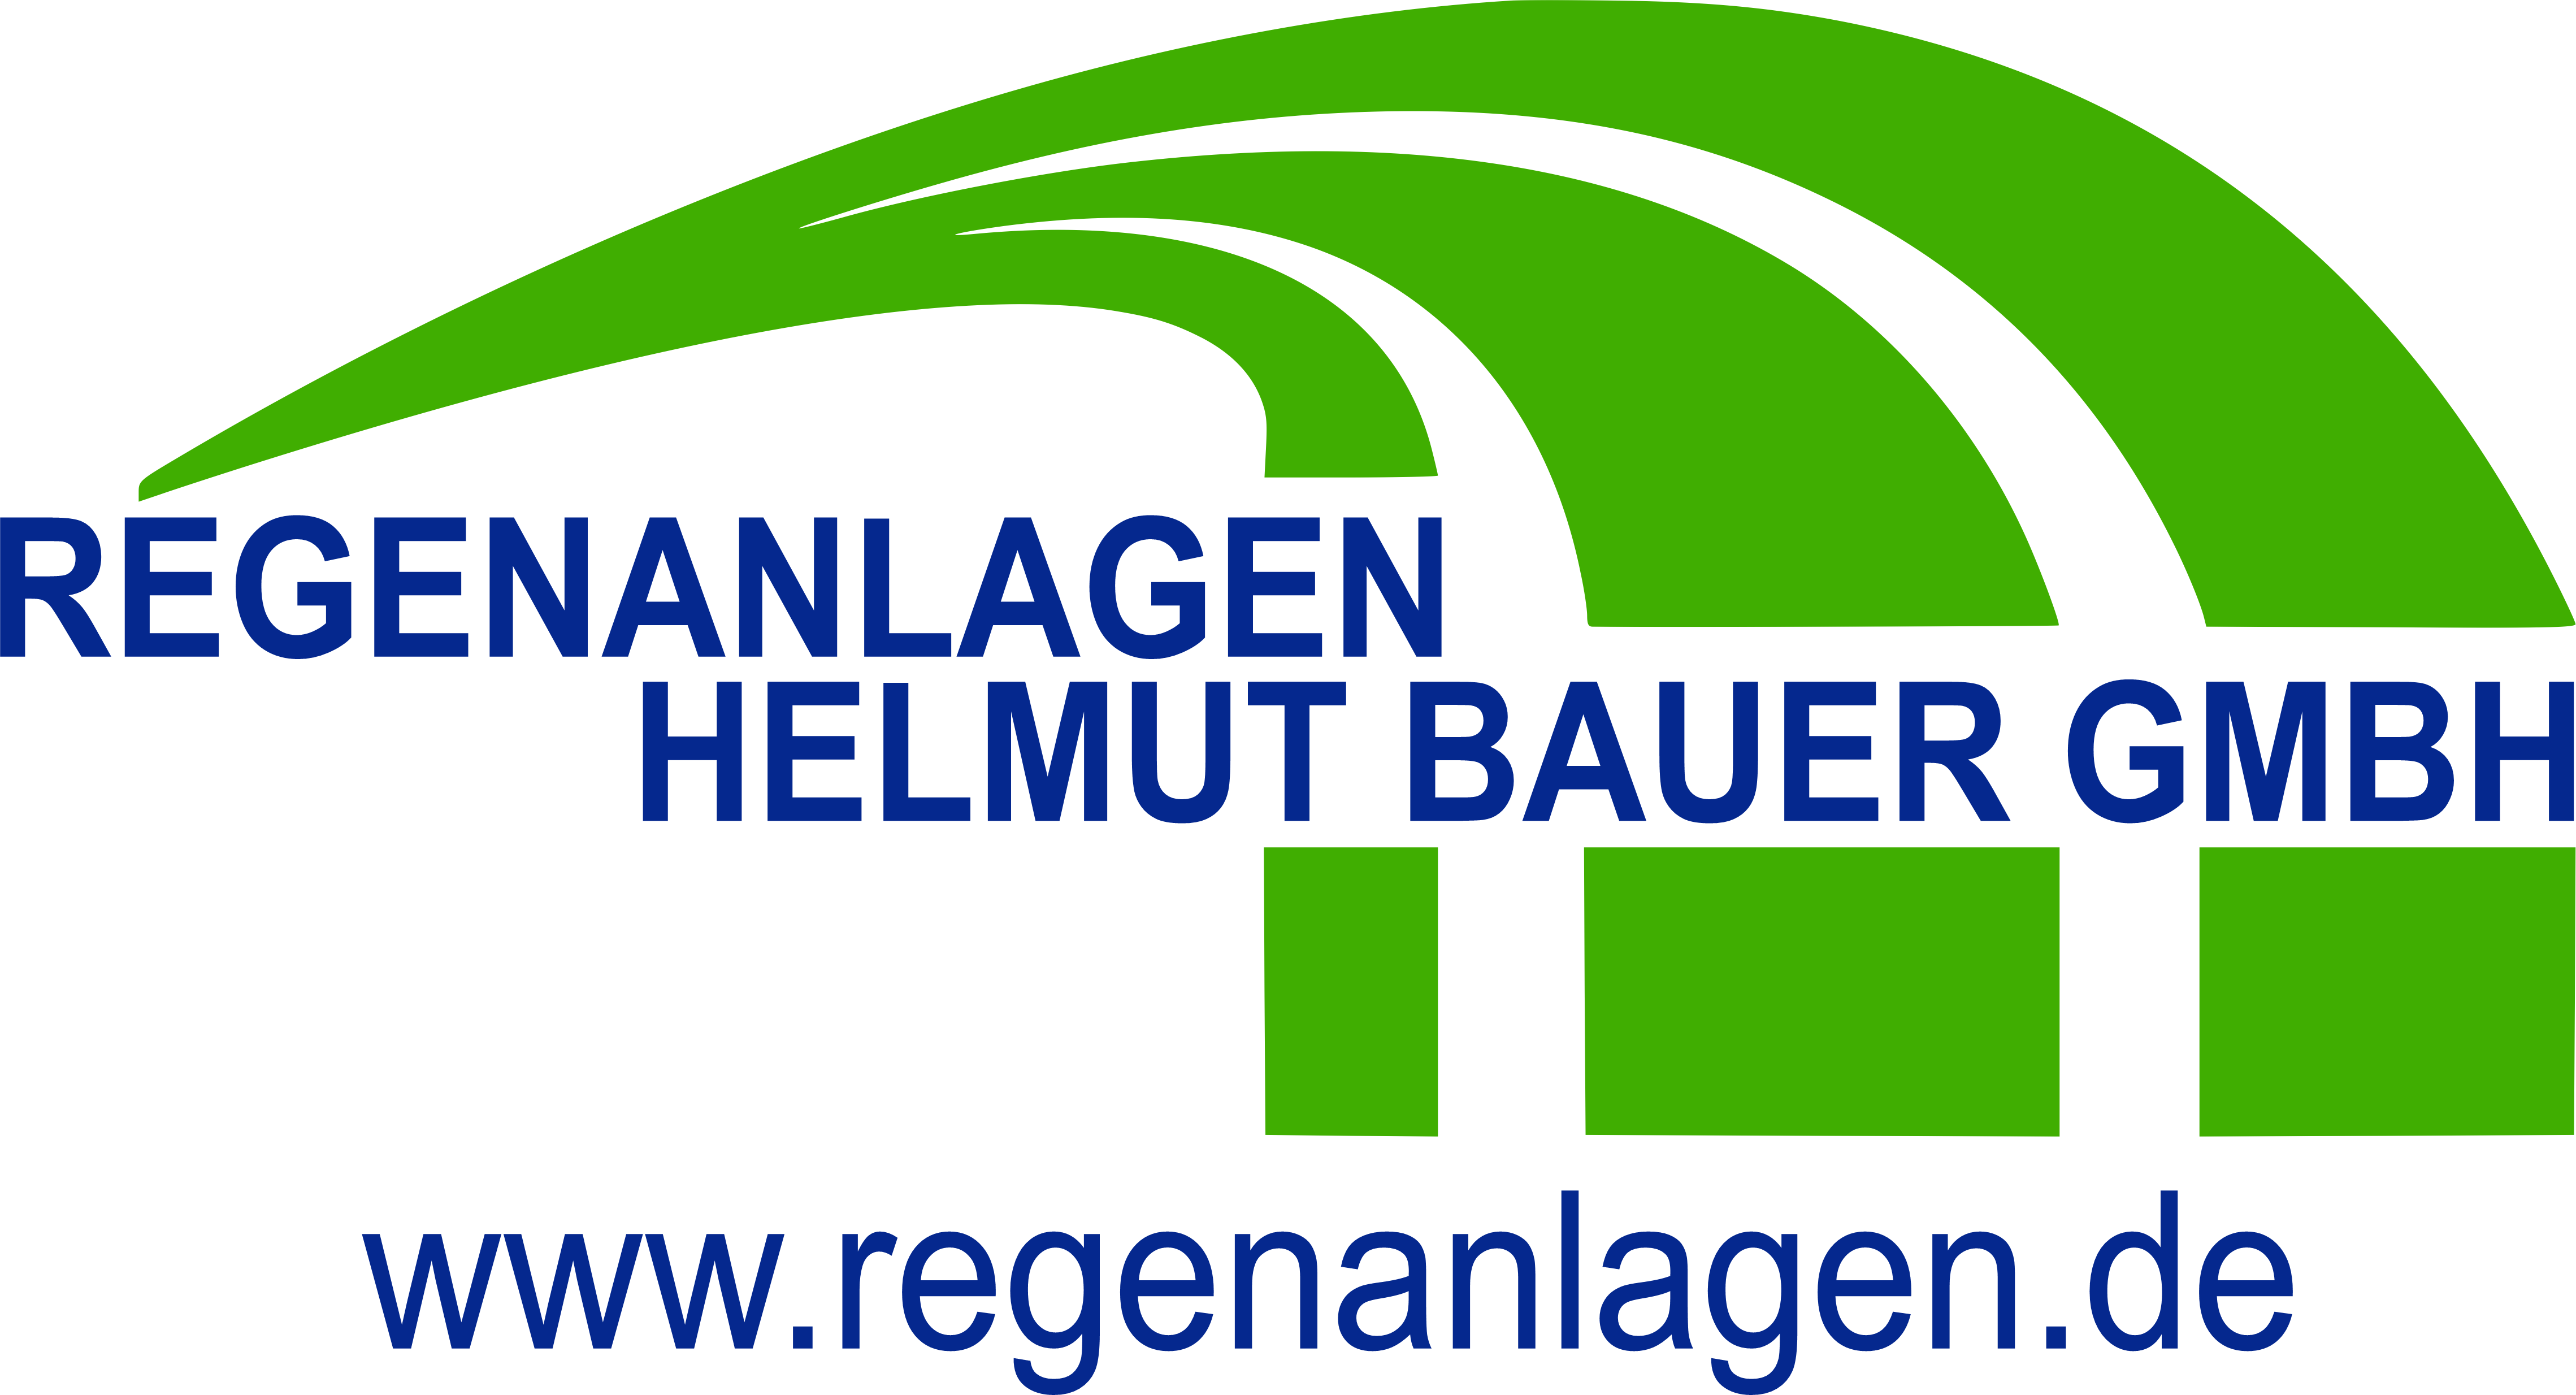 WebShop- Regenanlagen Helmut Bauer GmbH